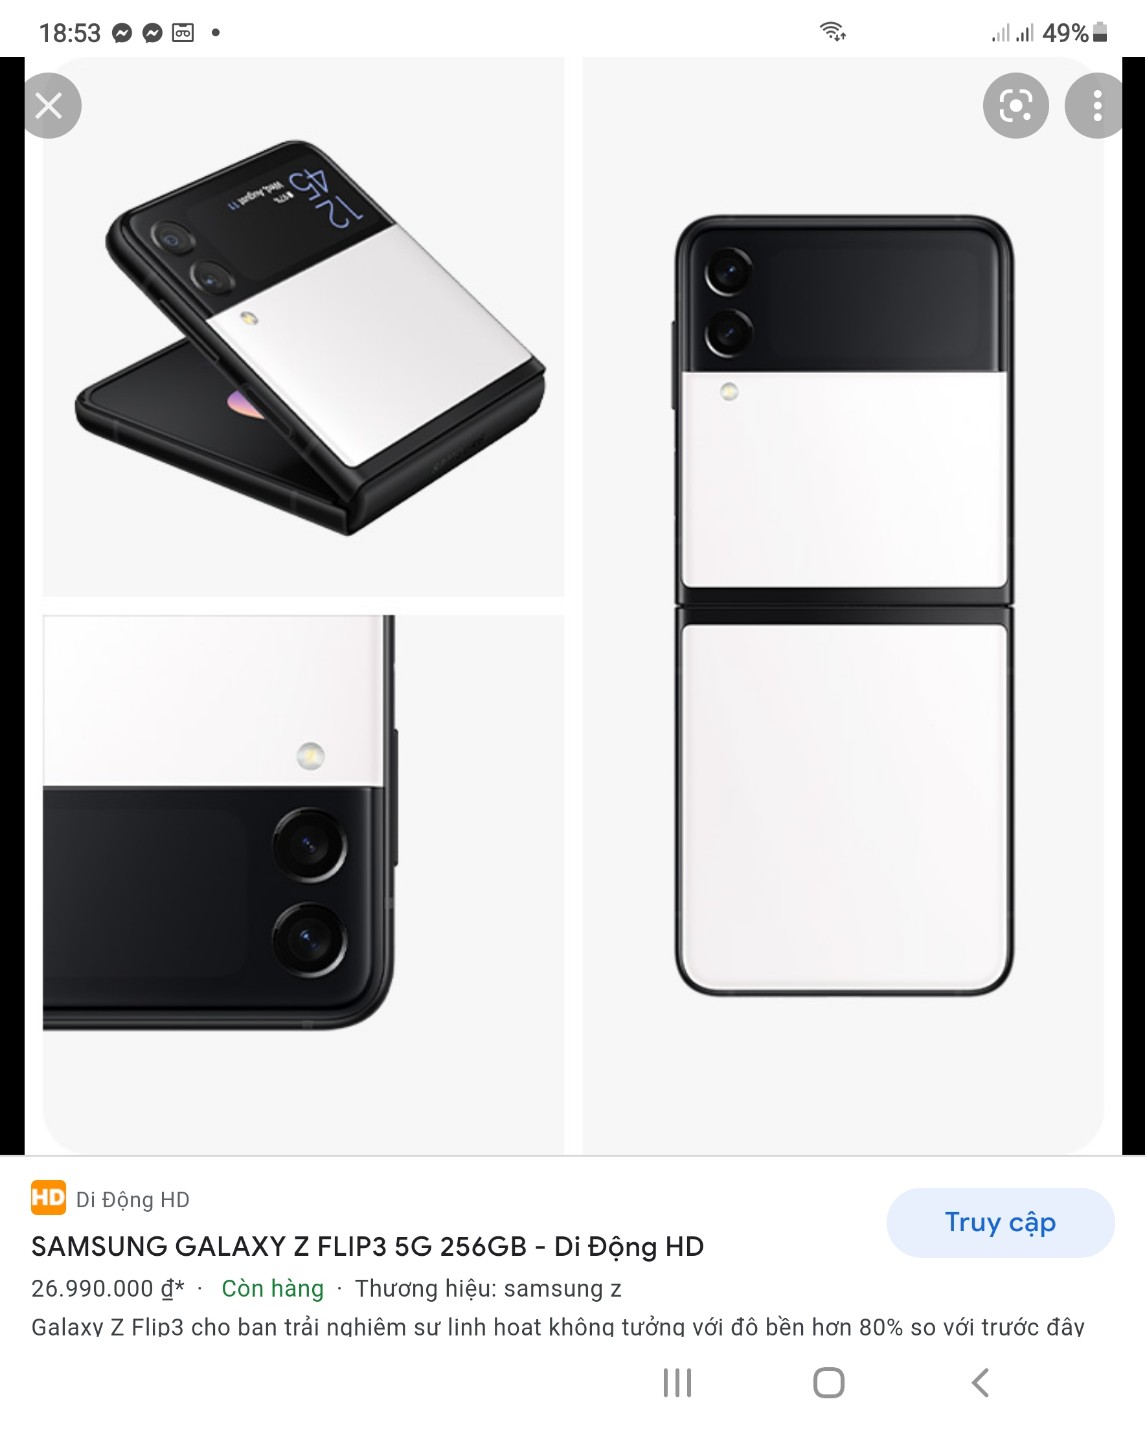 Samsung Galaxy Z Flip3 5G (8GB | 128GB) - Màu Trắng sứ - Chính Hãng Mới 100% Nguyên Seal